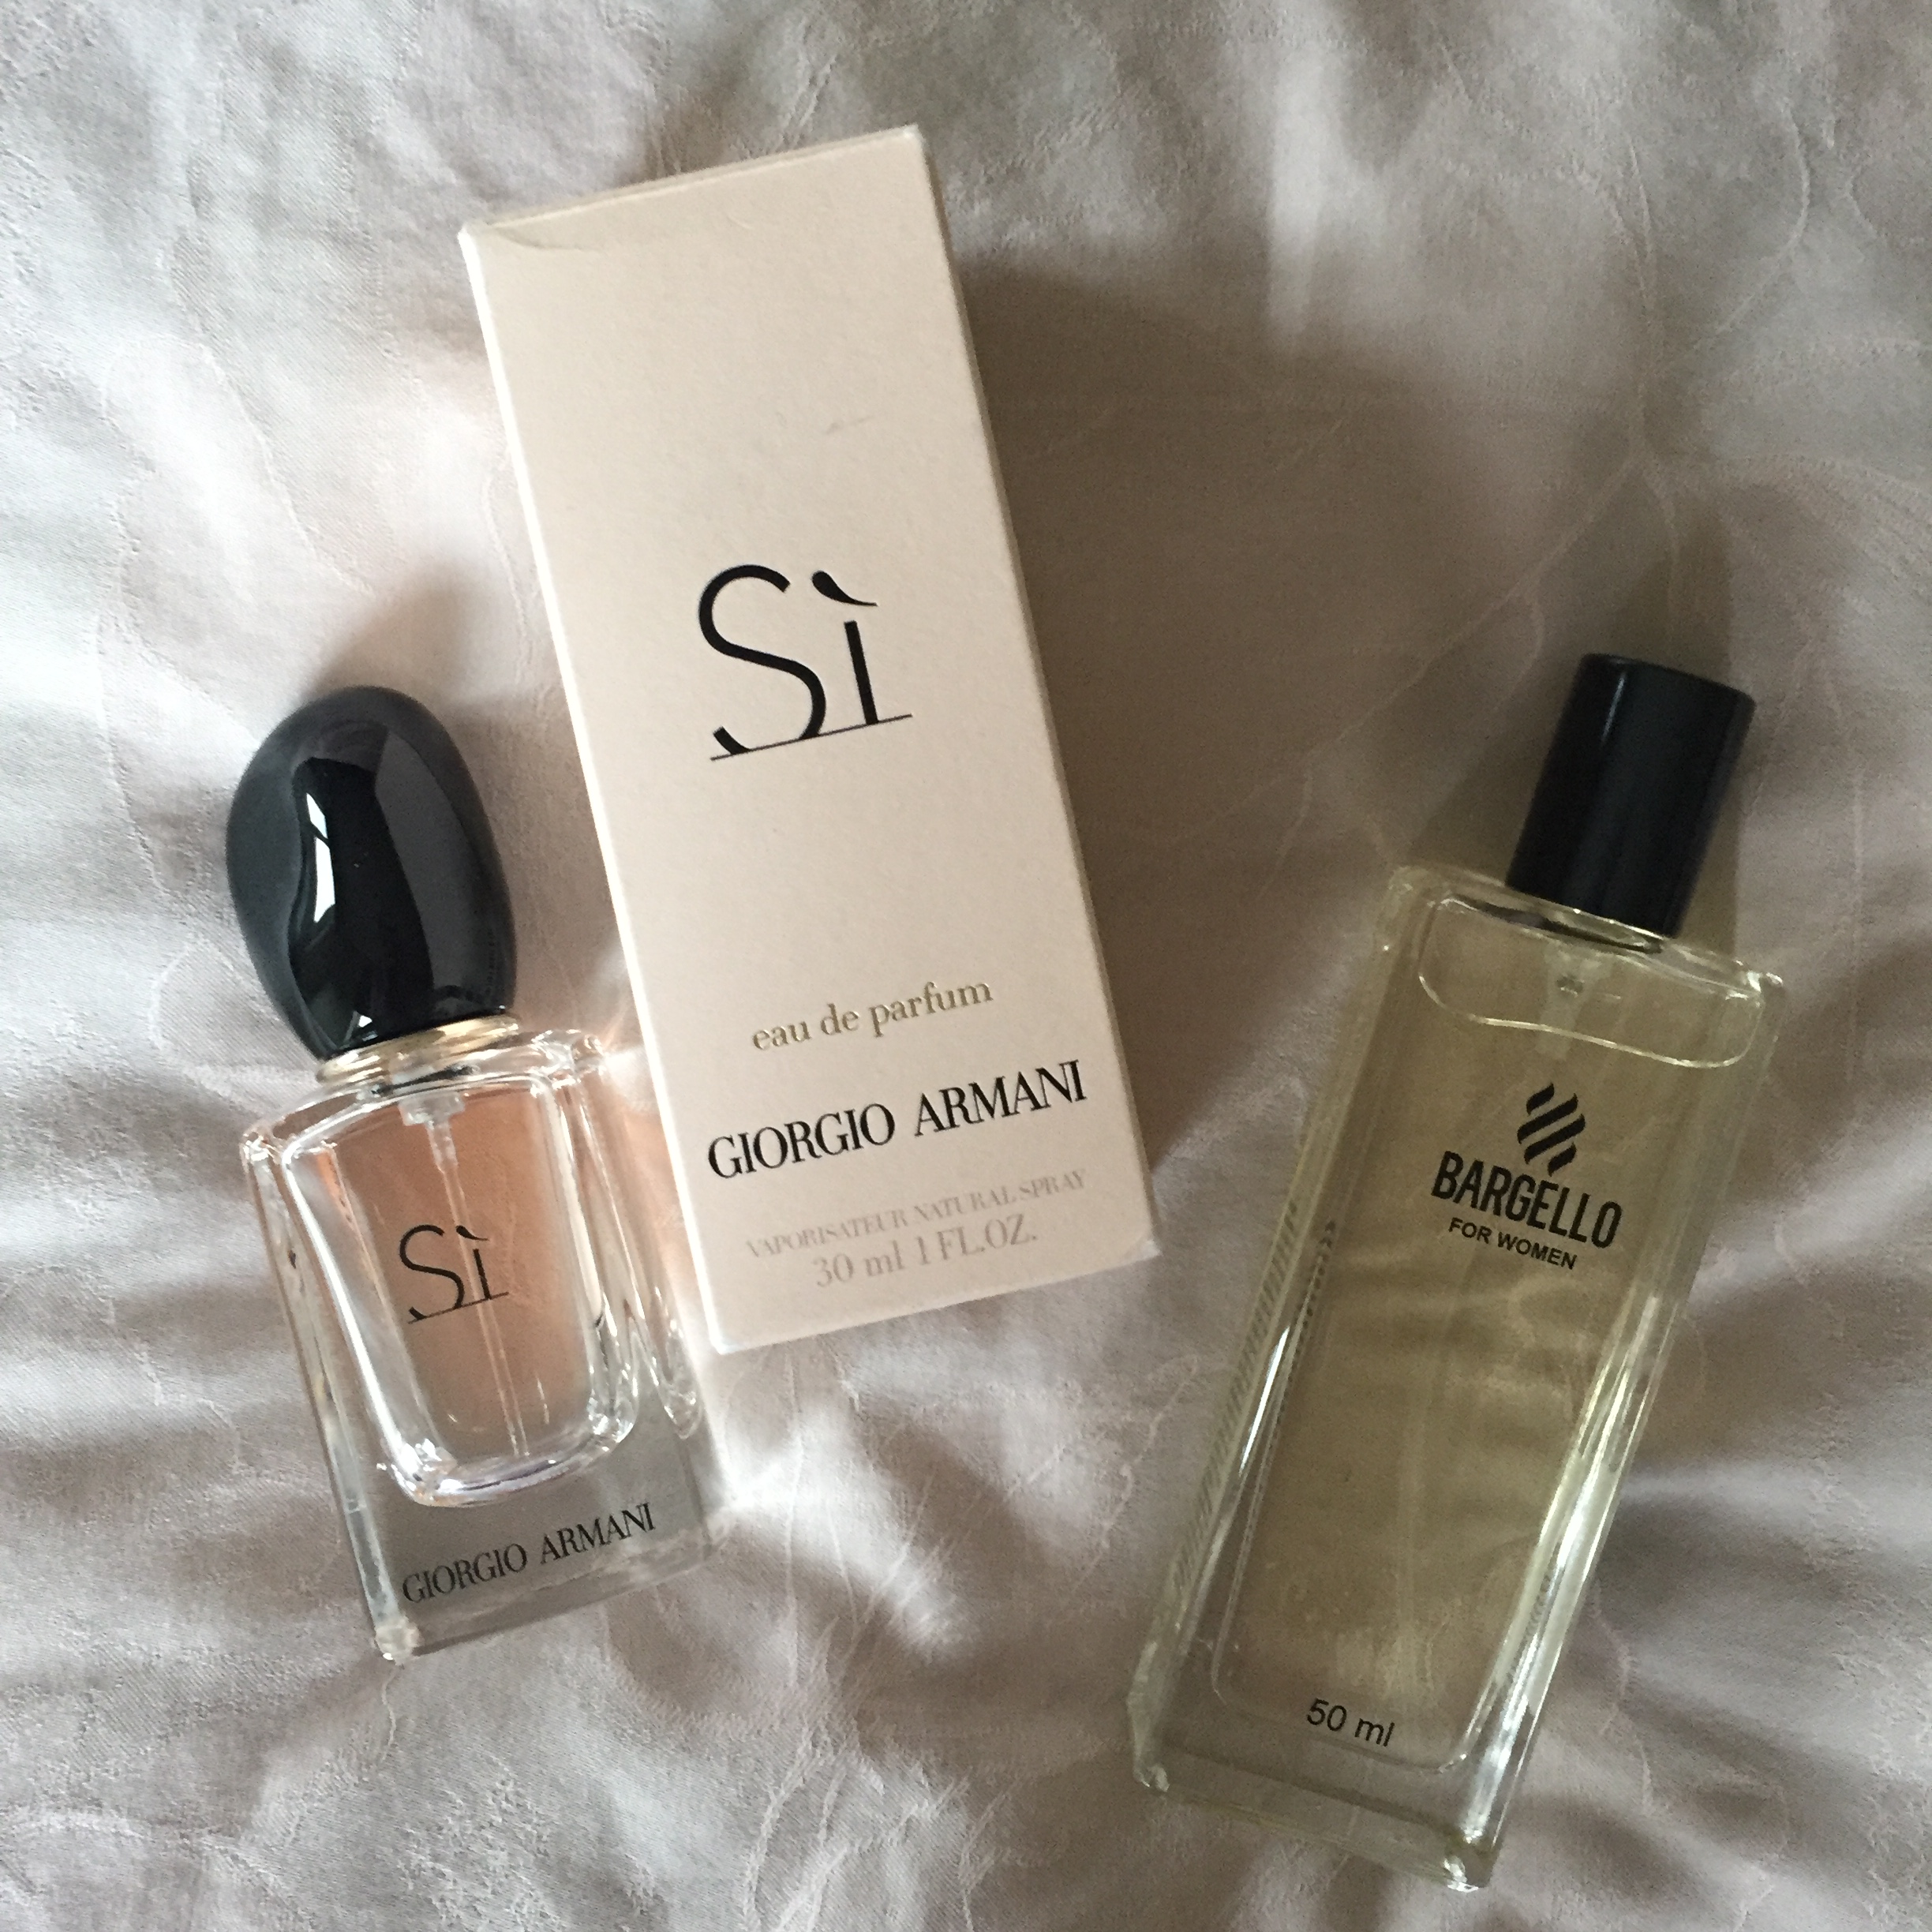 Bargello Perfumes | Lisa's Lifestyle